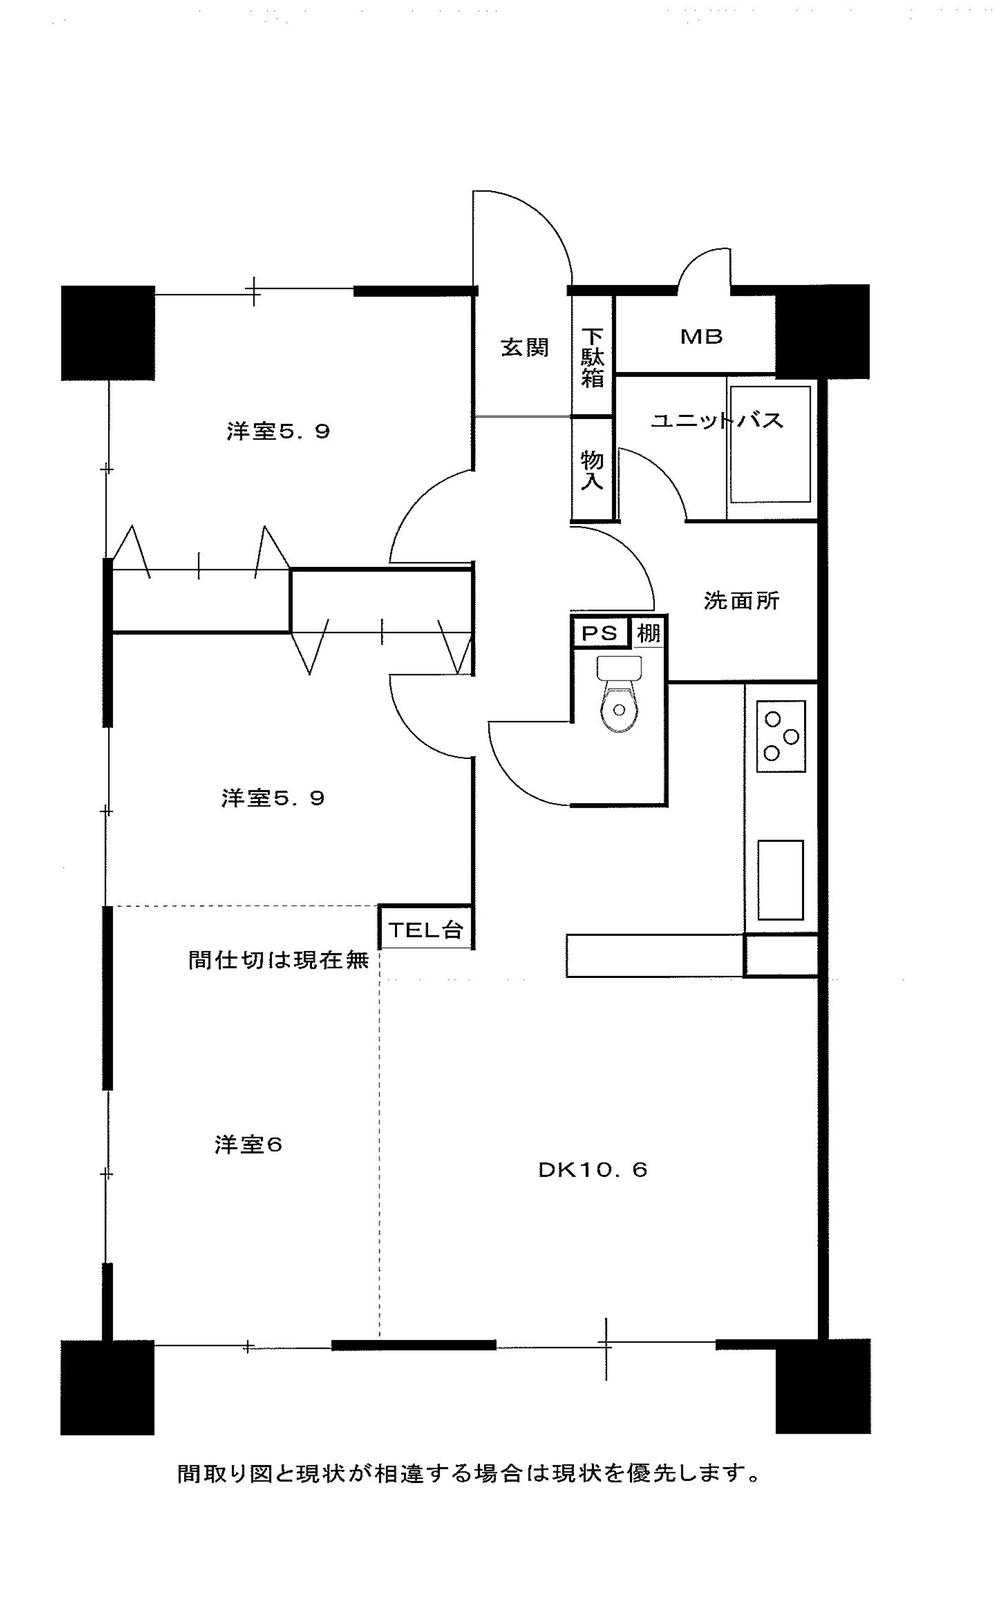 Floor plan. 3DK, Price 13.5 million yen, Footprint 73.5 sq m